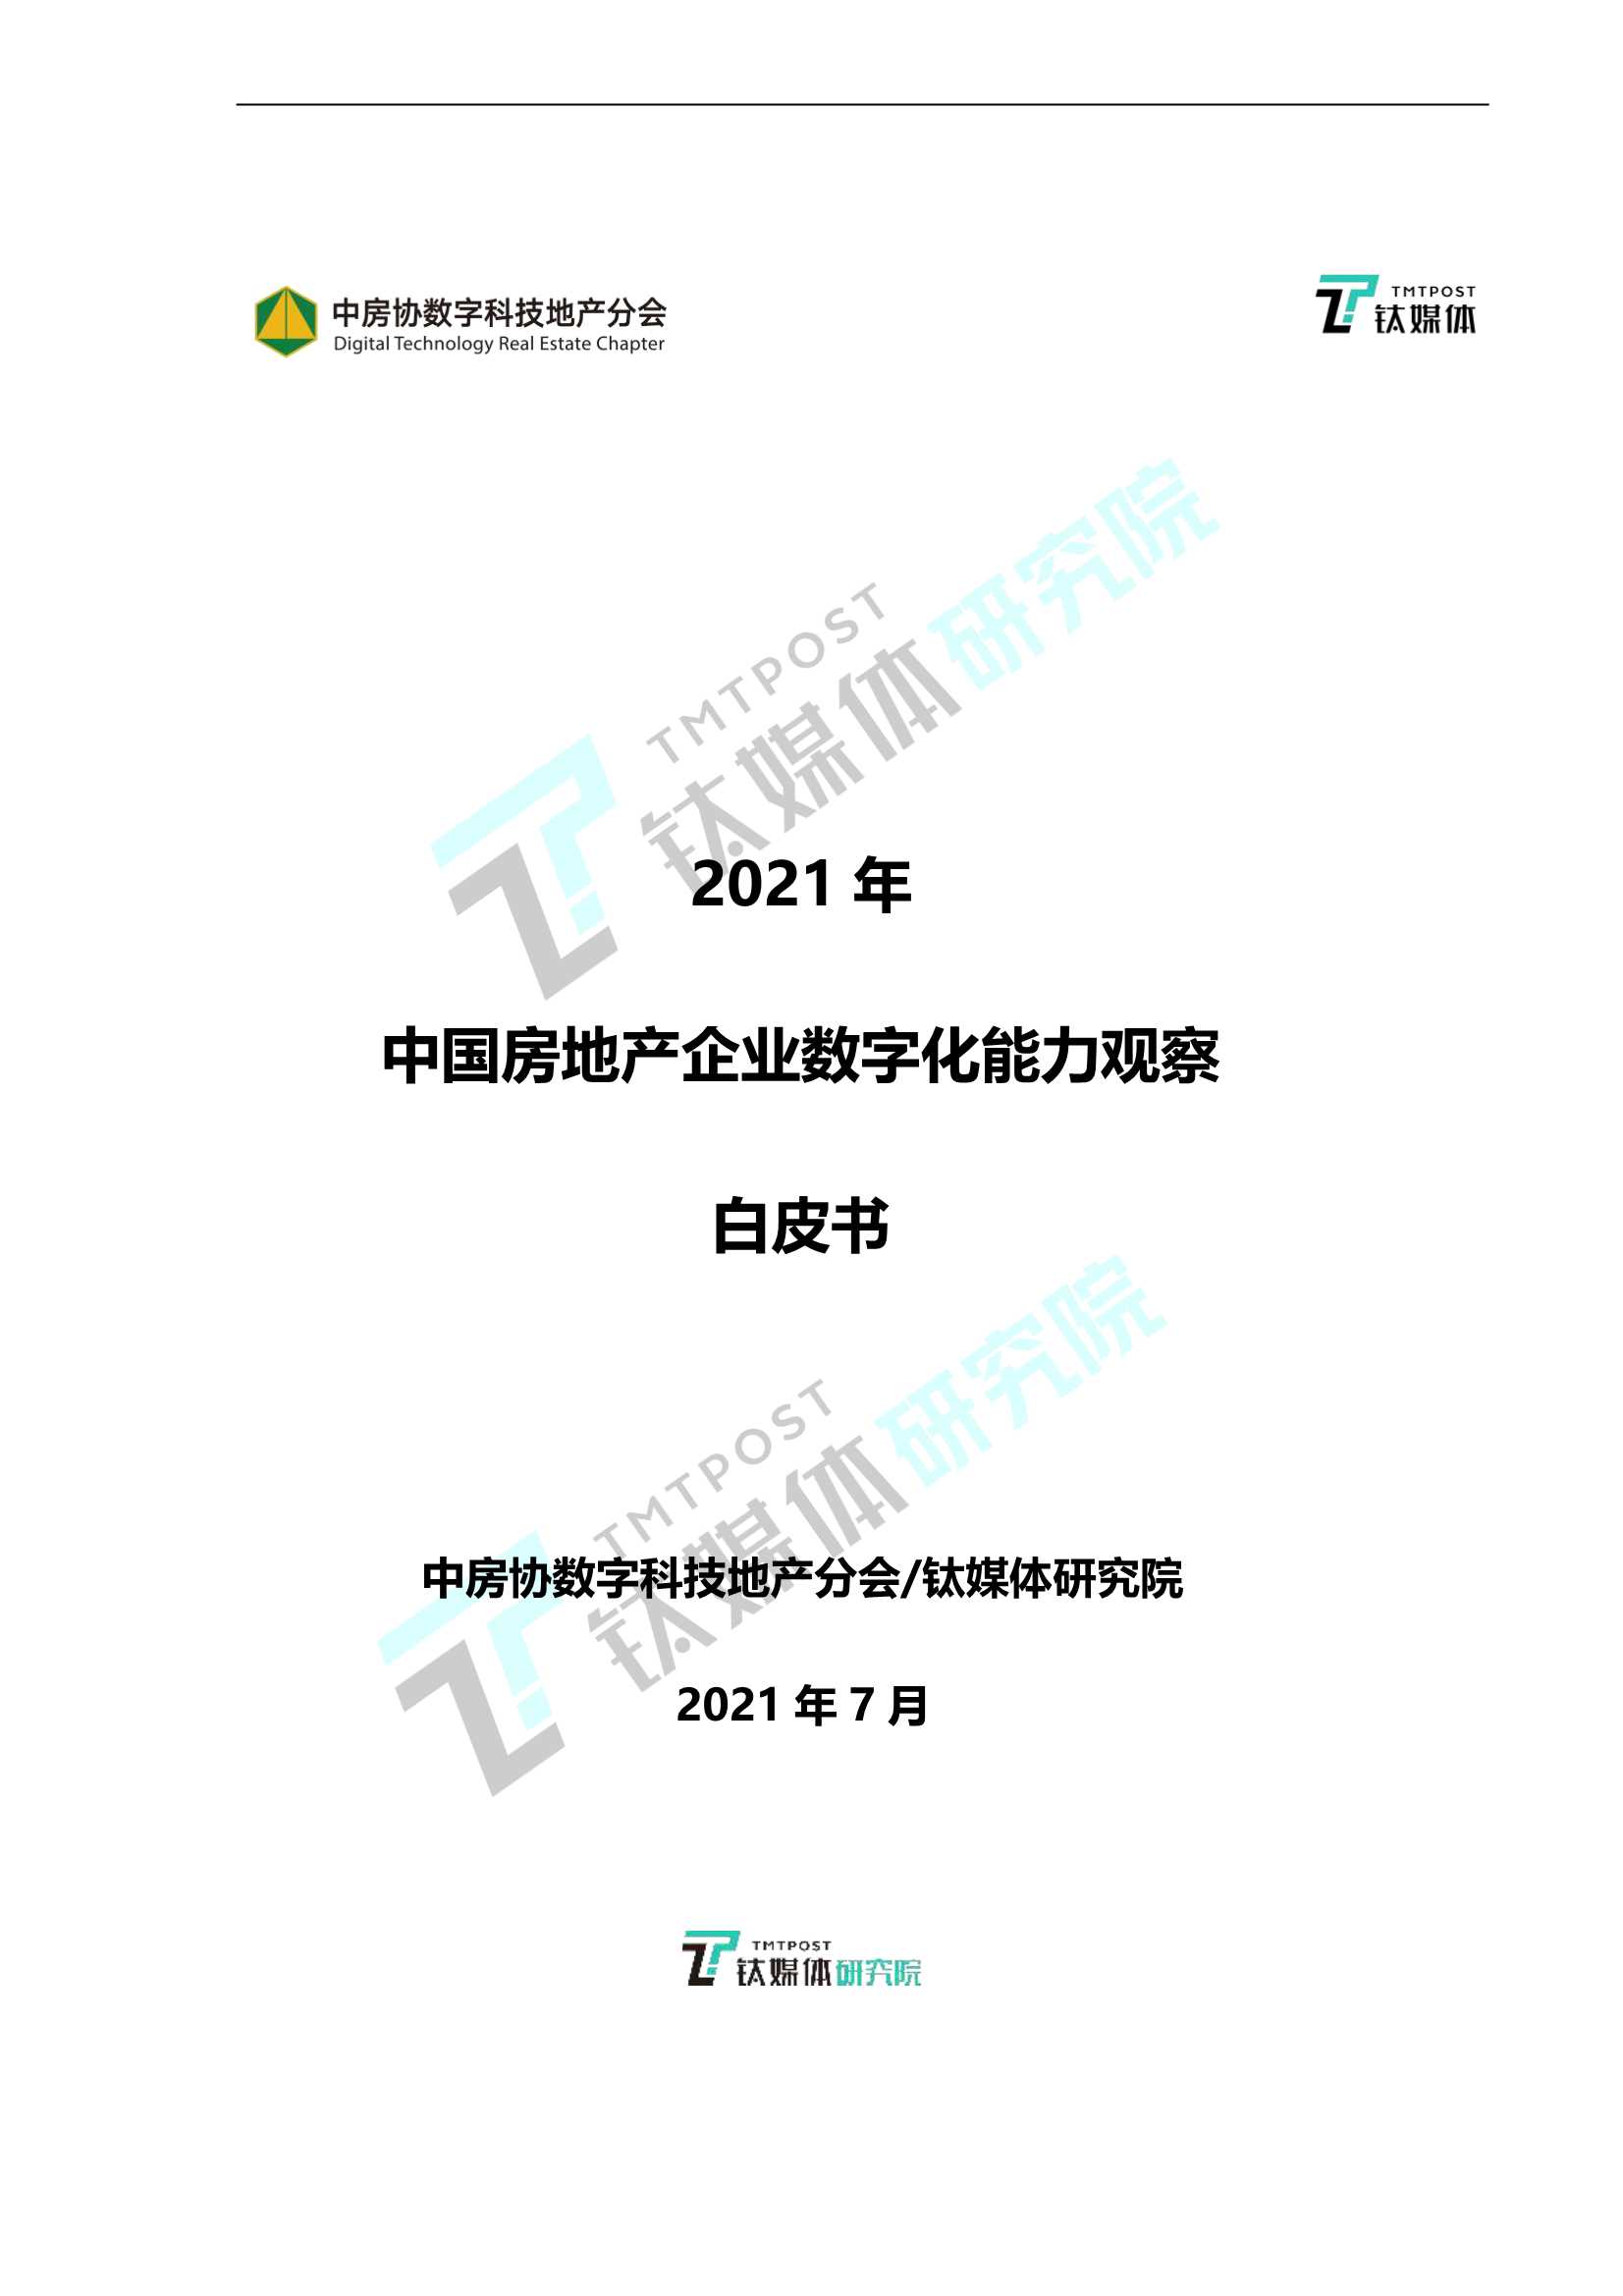 2021中国房地产数字化能力观察白皮书-2021.09-16页